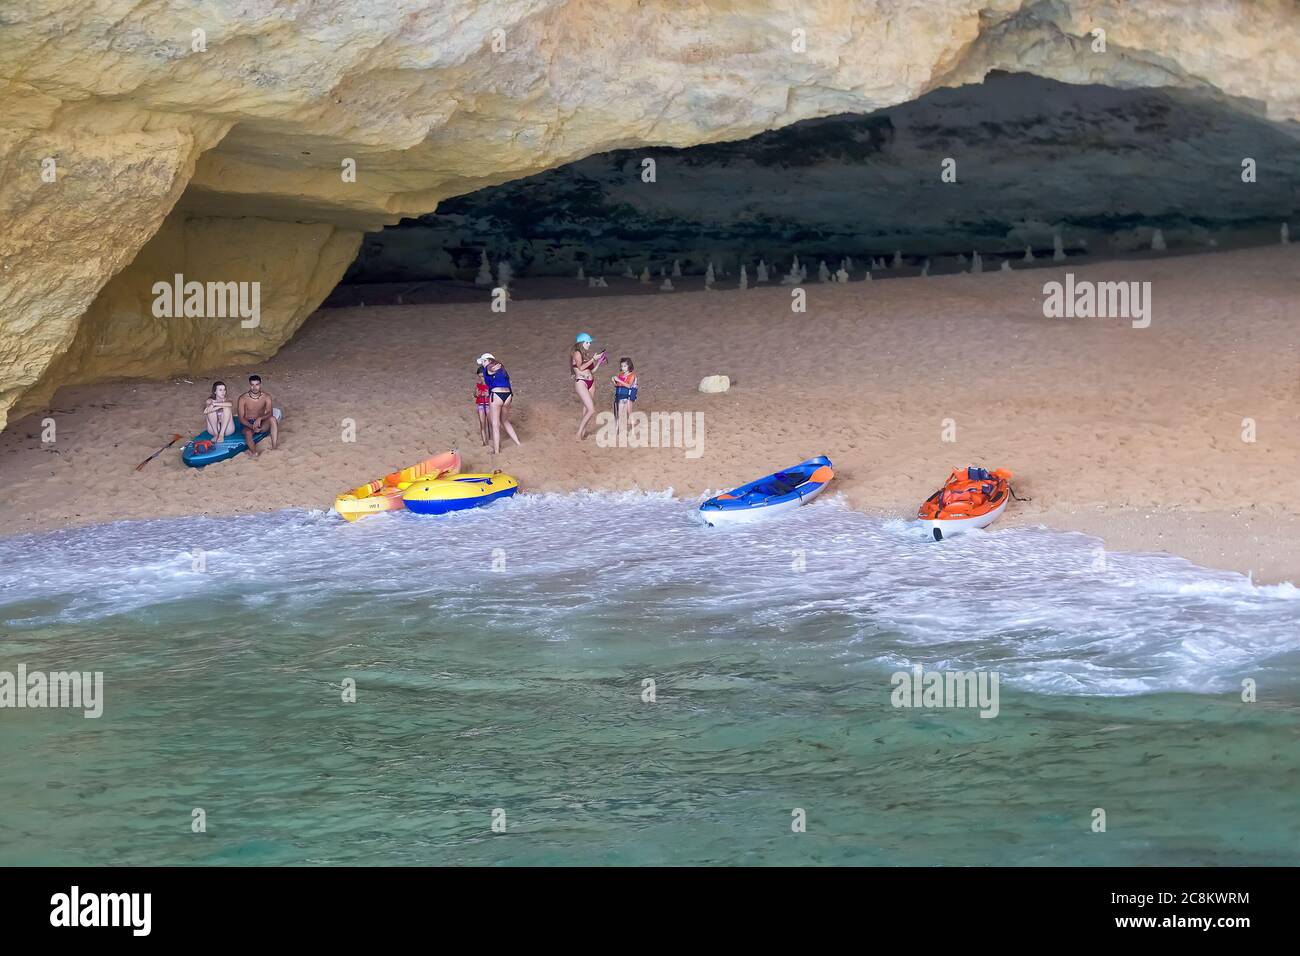 Lagoa, Portugal - 11. Juli 2020: Sehen Sie die berühmten Benagil Höhlen von der Seeseite. Schöne natürliche Meereshöhle mit smaragdgrünem Wasser Stockfoto